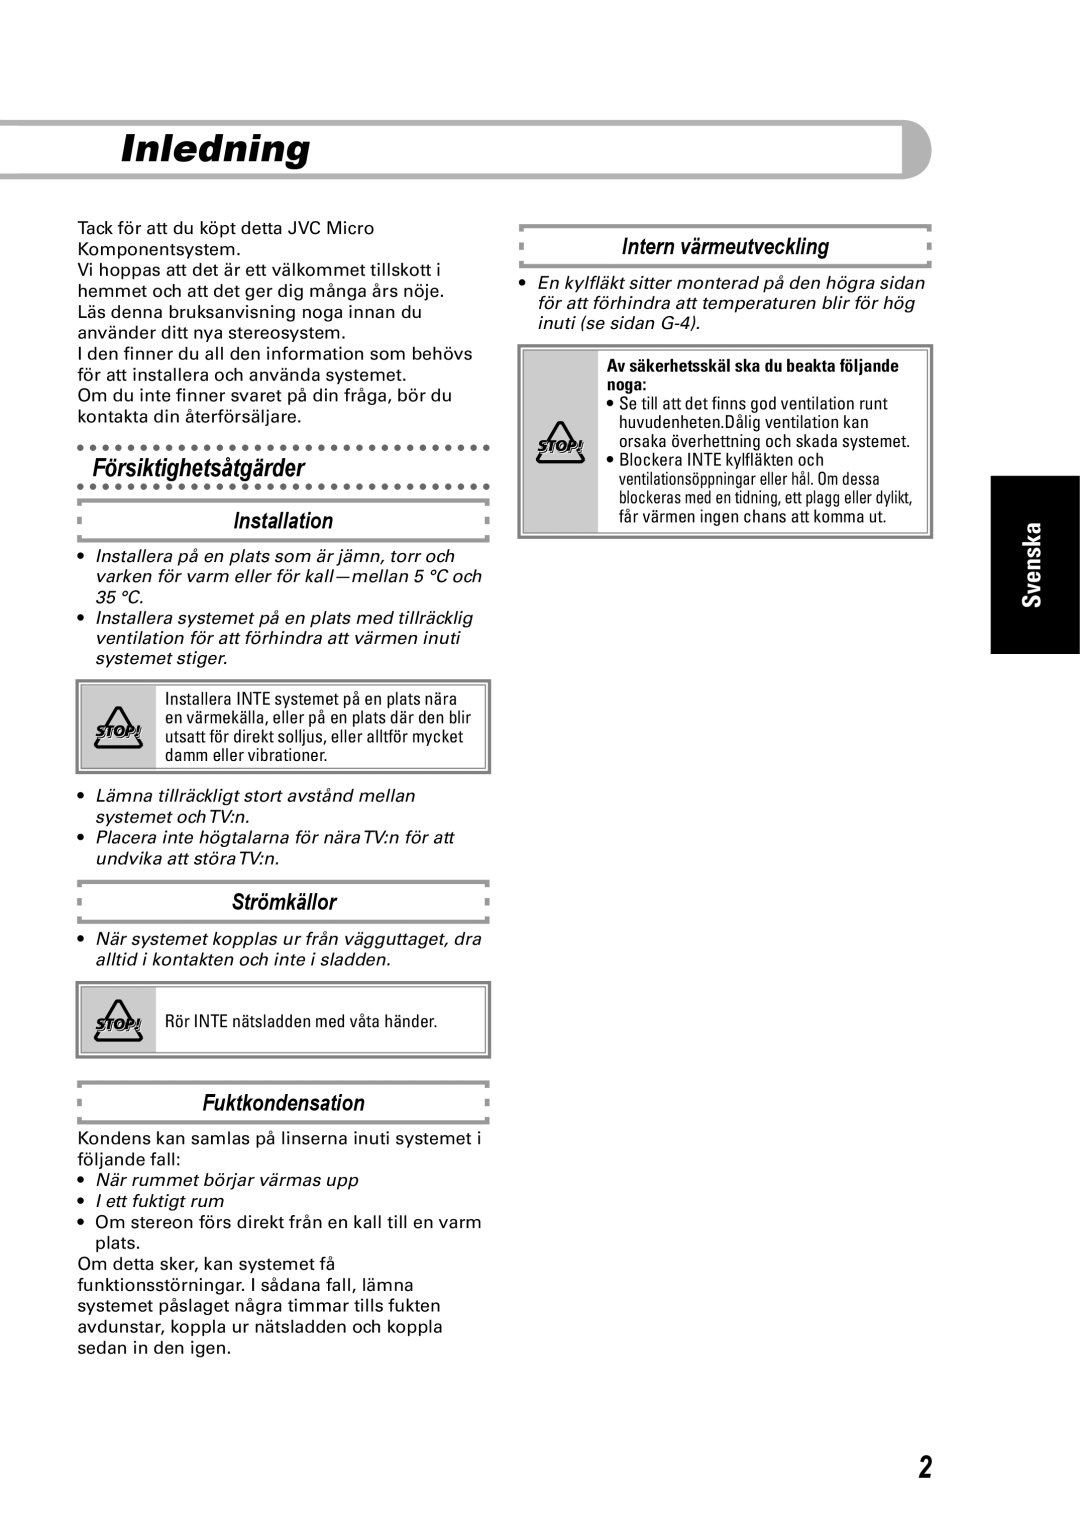 JVC SP-UXEP25 manual Inledning, Försiktighetsåtgärder, Installation, Strömkällor, Fuktkondensation, Intern värmeutveckling 